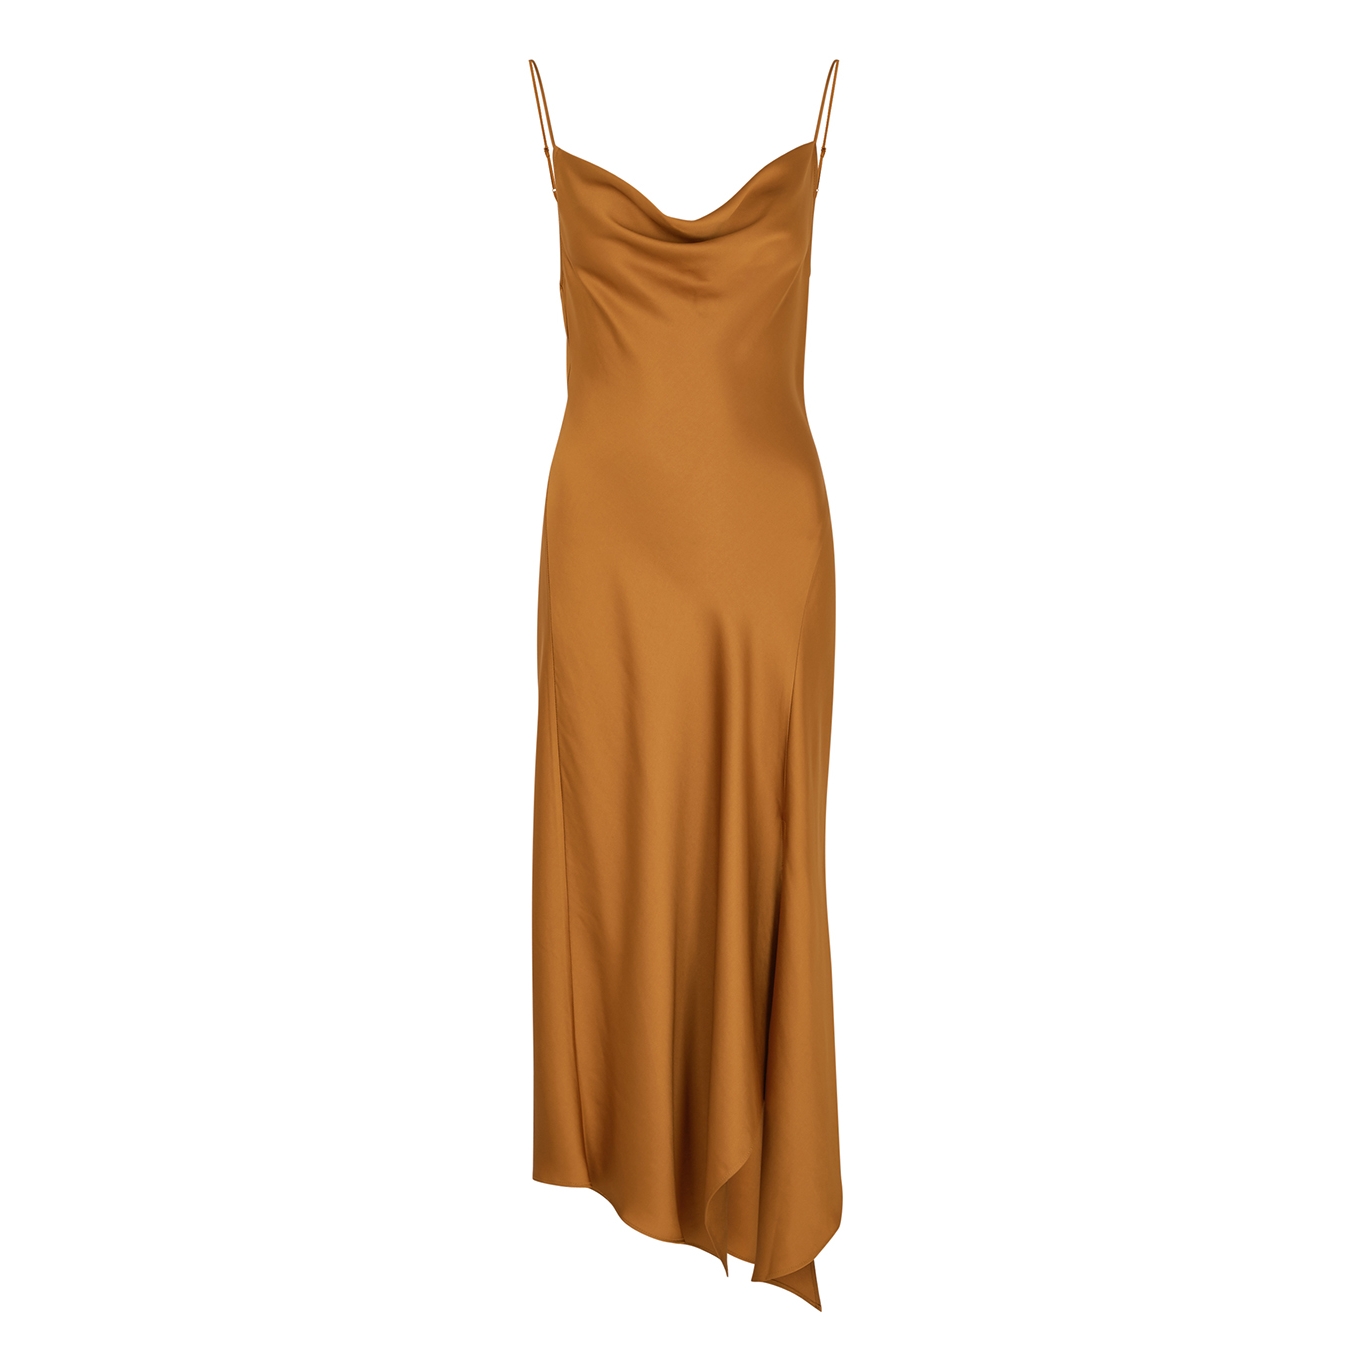 Jonathan Simkhai Nellie Bronze Satin Slip Dress - Copper - 8